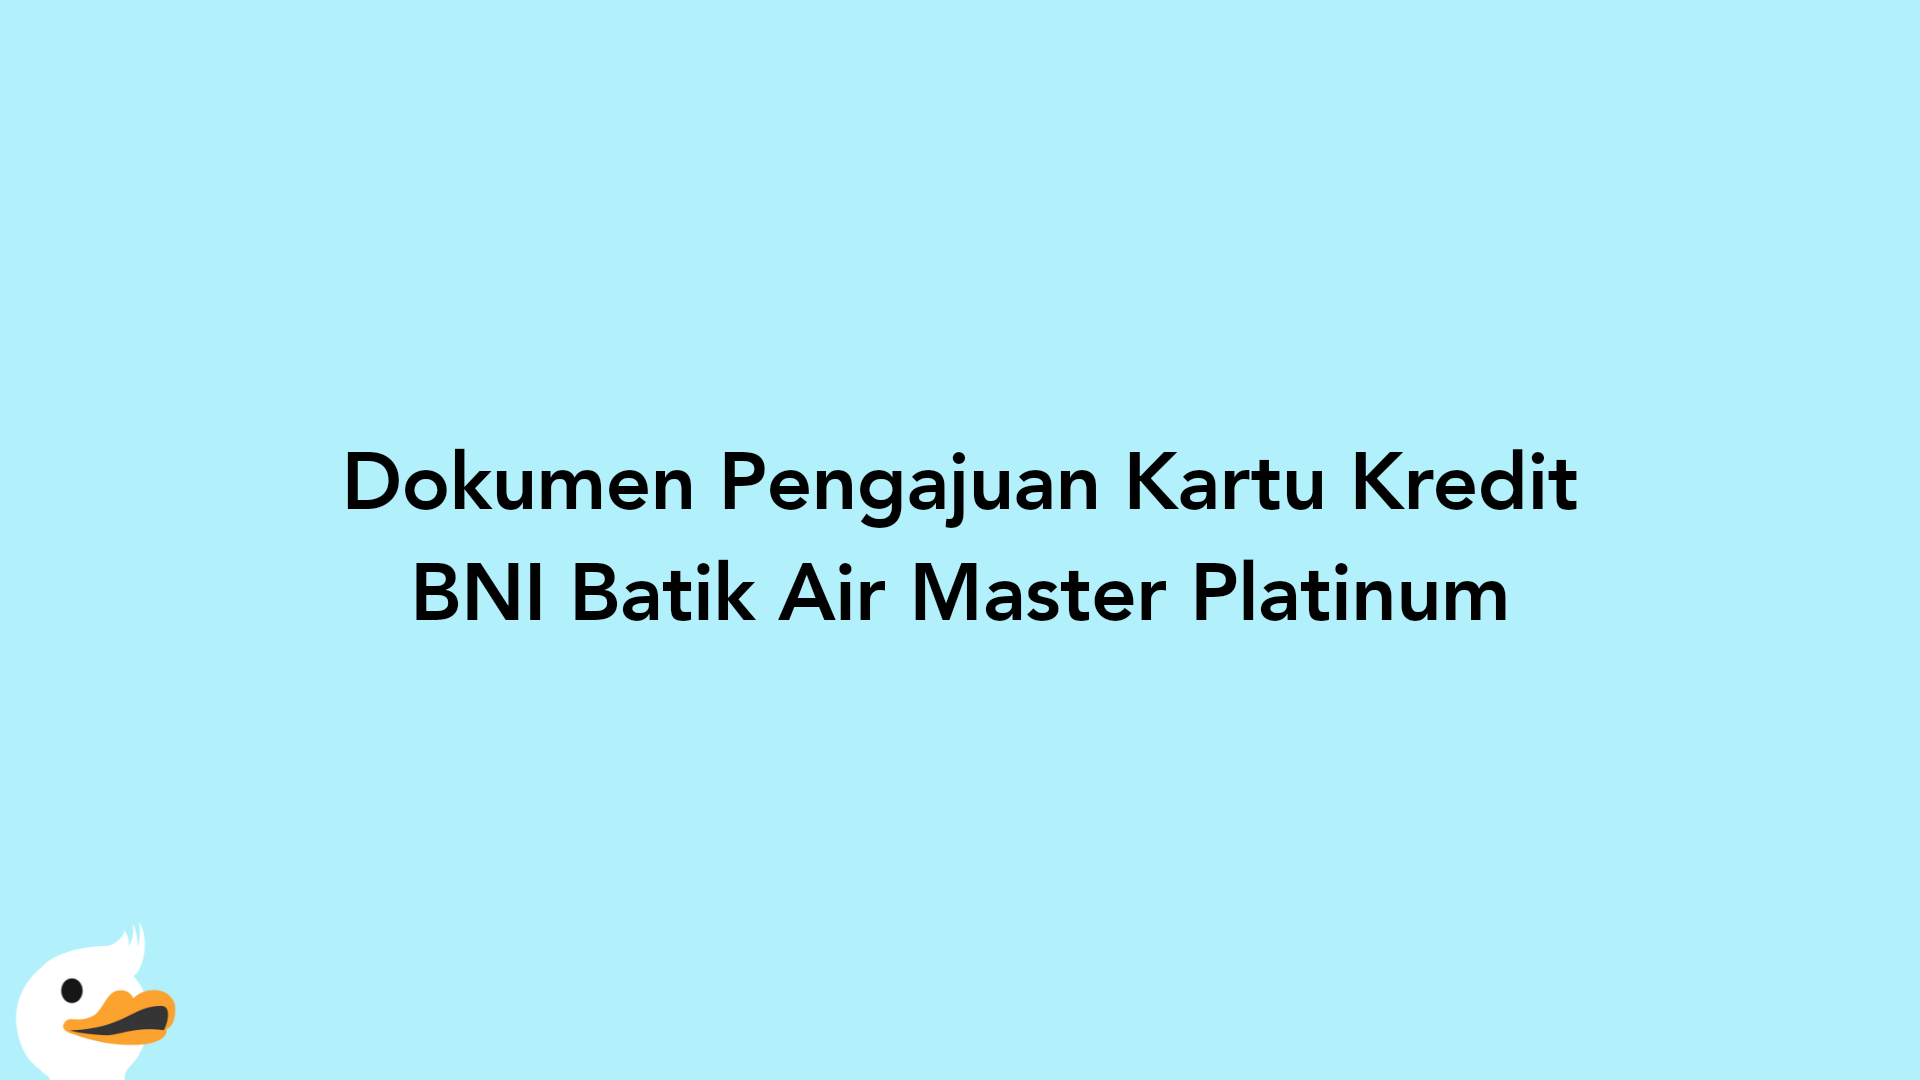 Dokumen Pengajuan Kartu Kredit BNI Batik Air Master Platinum